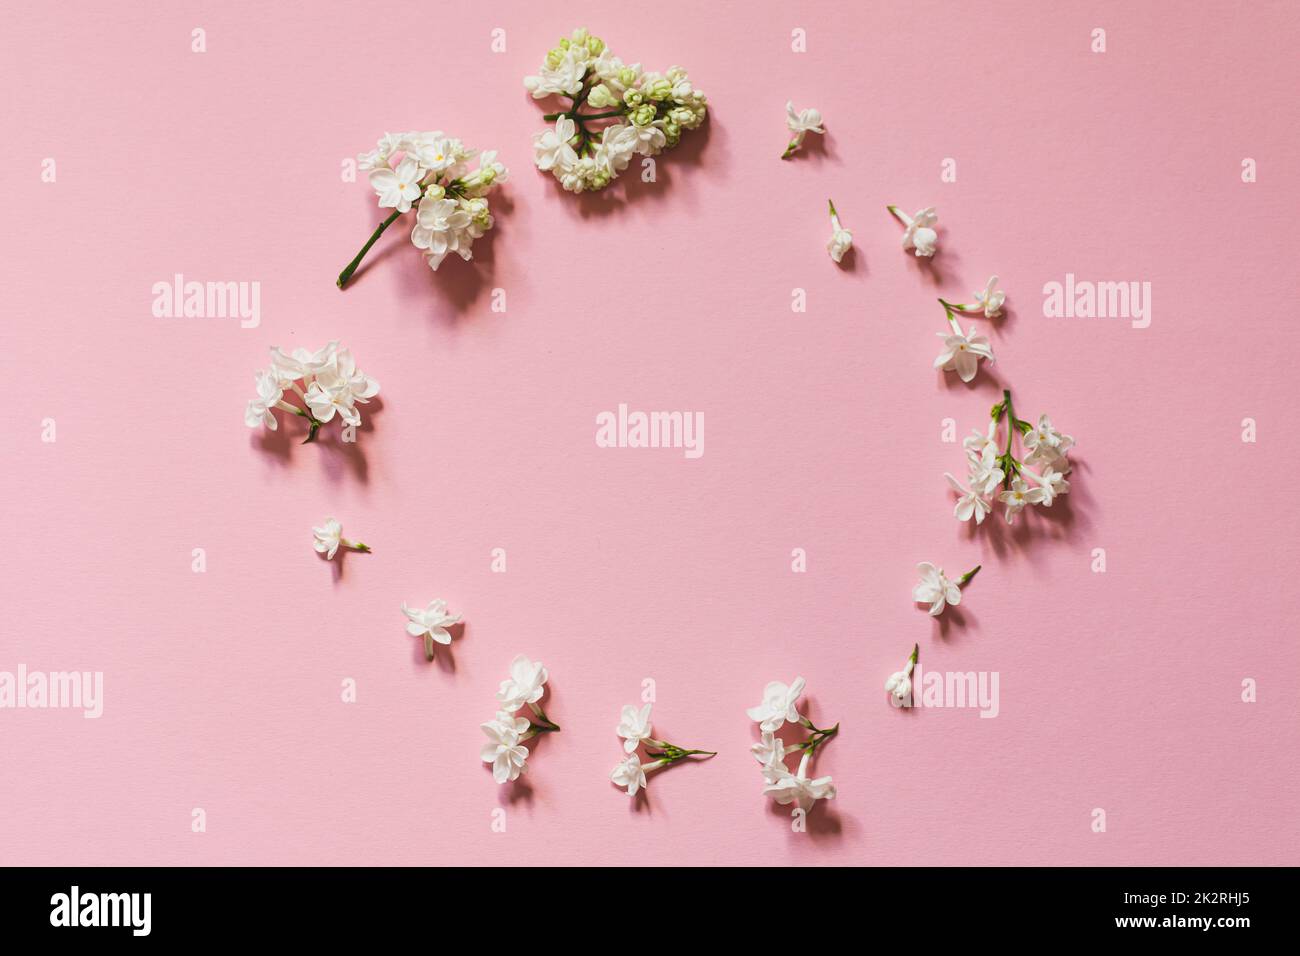 Kreative Gratulation Layout von Flieder auf pinkfarbenem Papper. Frühlingsblumen-Konzept. Flach liegend, Draufsicht, Kopierbereich Stockfoto